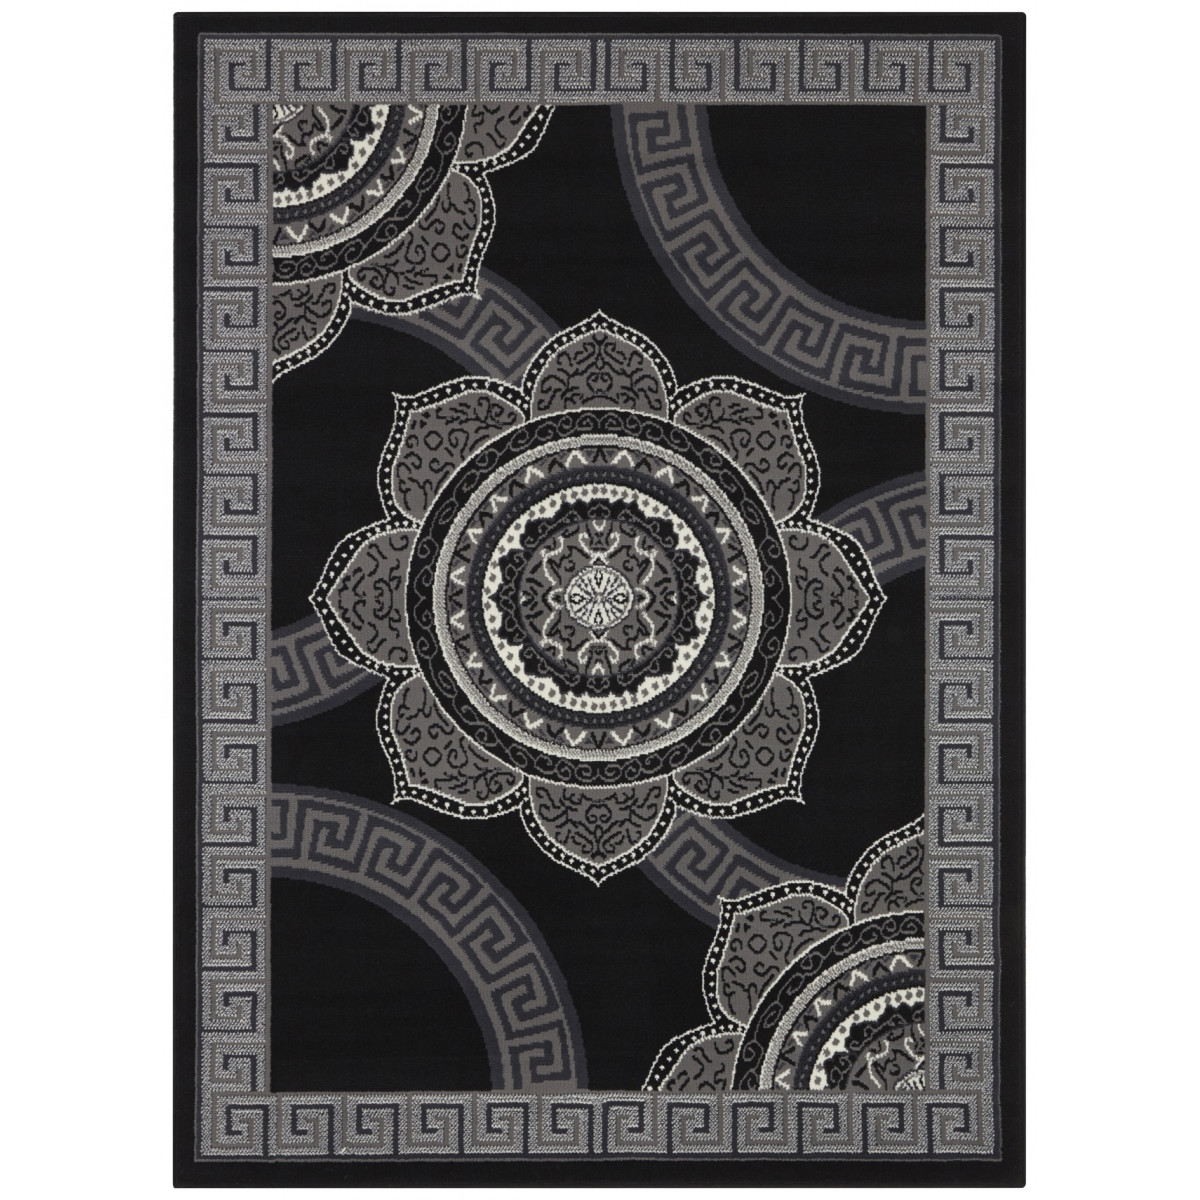 AKCE: 160x220 cm Kusový orientální koberec Mujkoberec Original 104306 Black